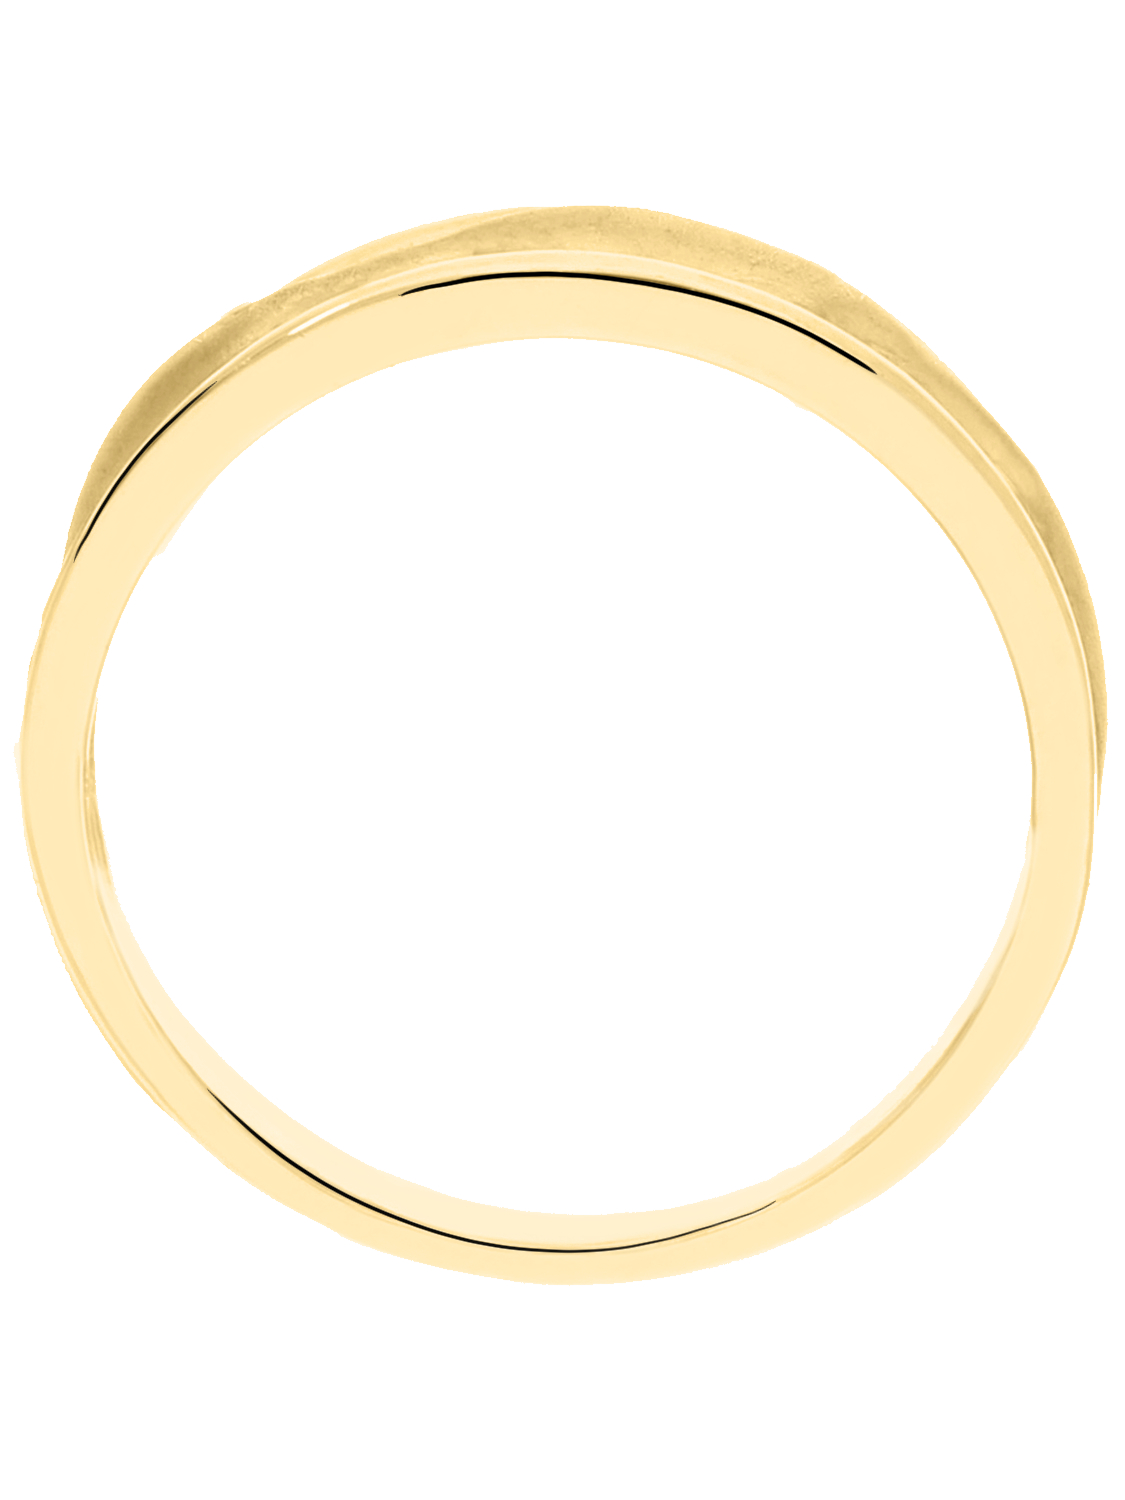 Lionella - Löwe Ring ohne Stein 333 Gold - Größe 58